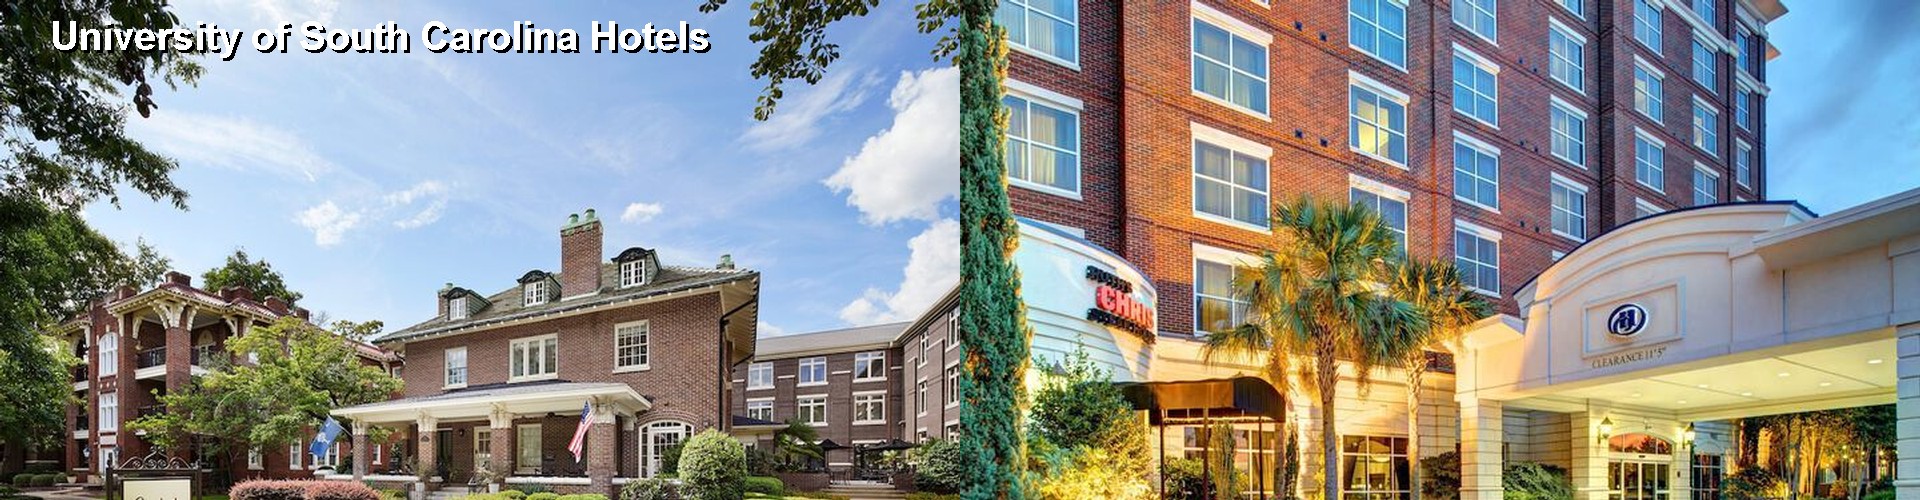 3 Best Hotels near University of South Carolina